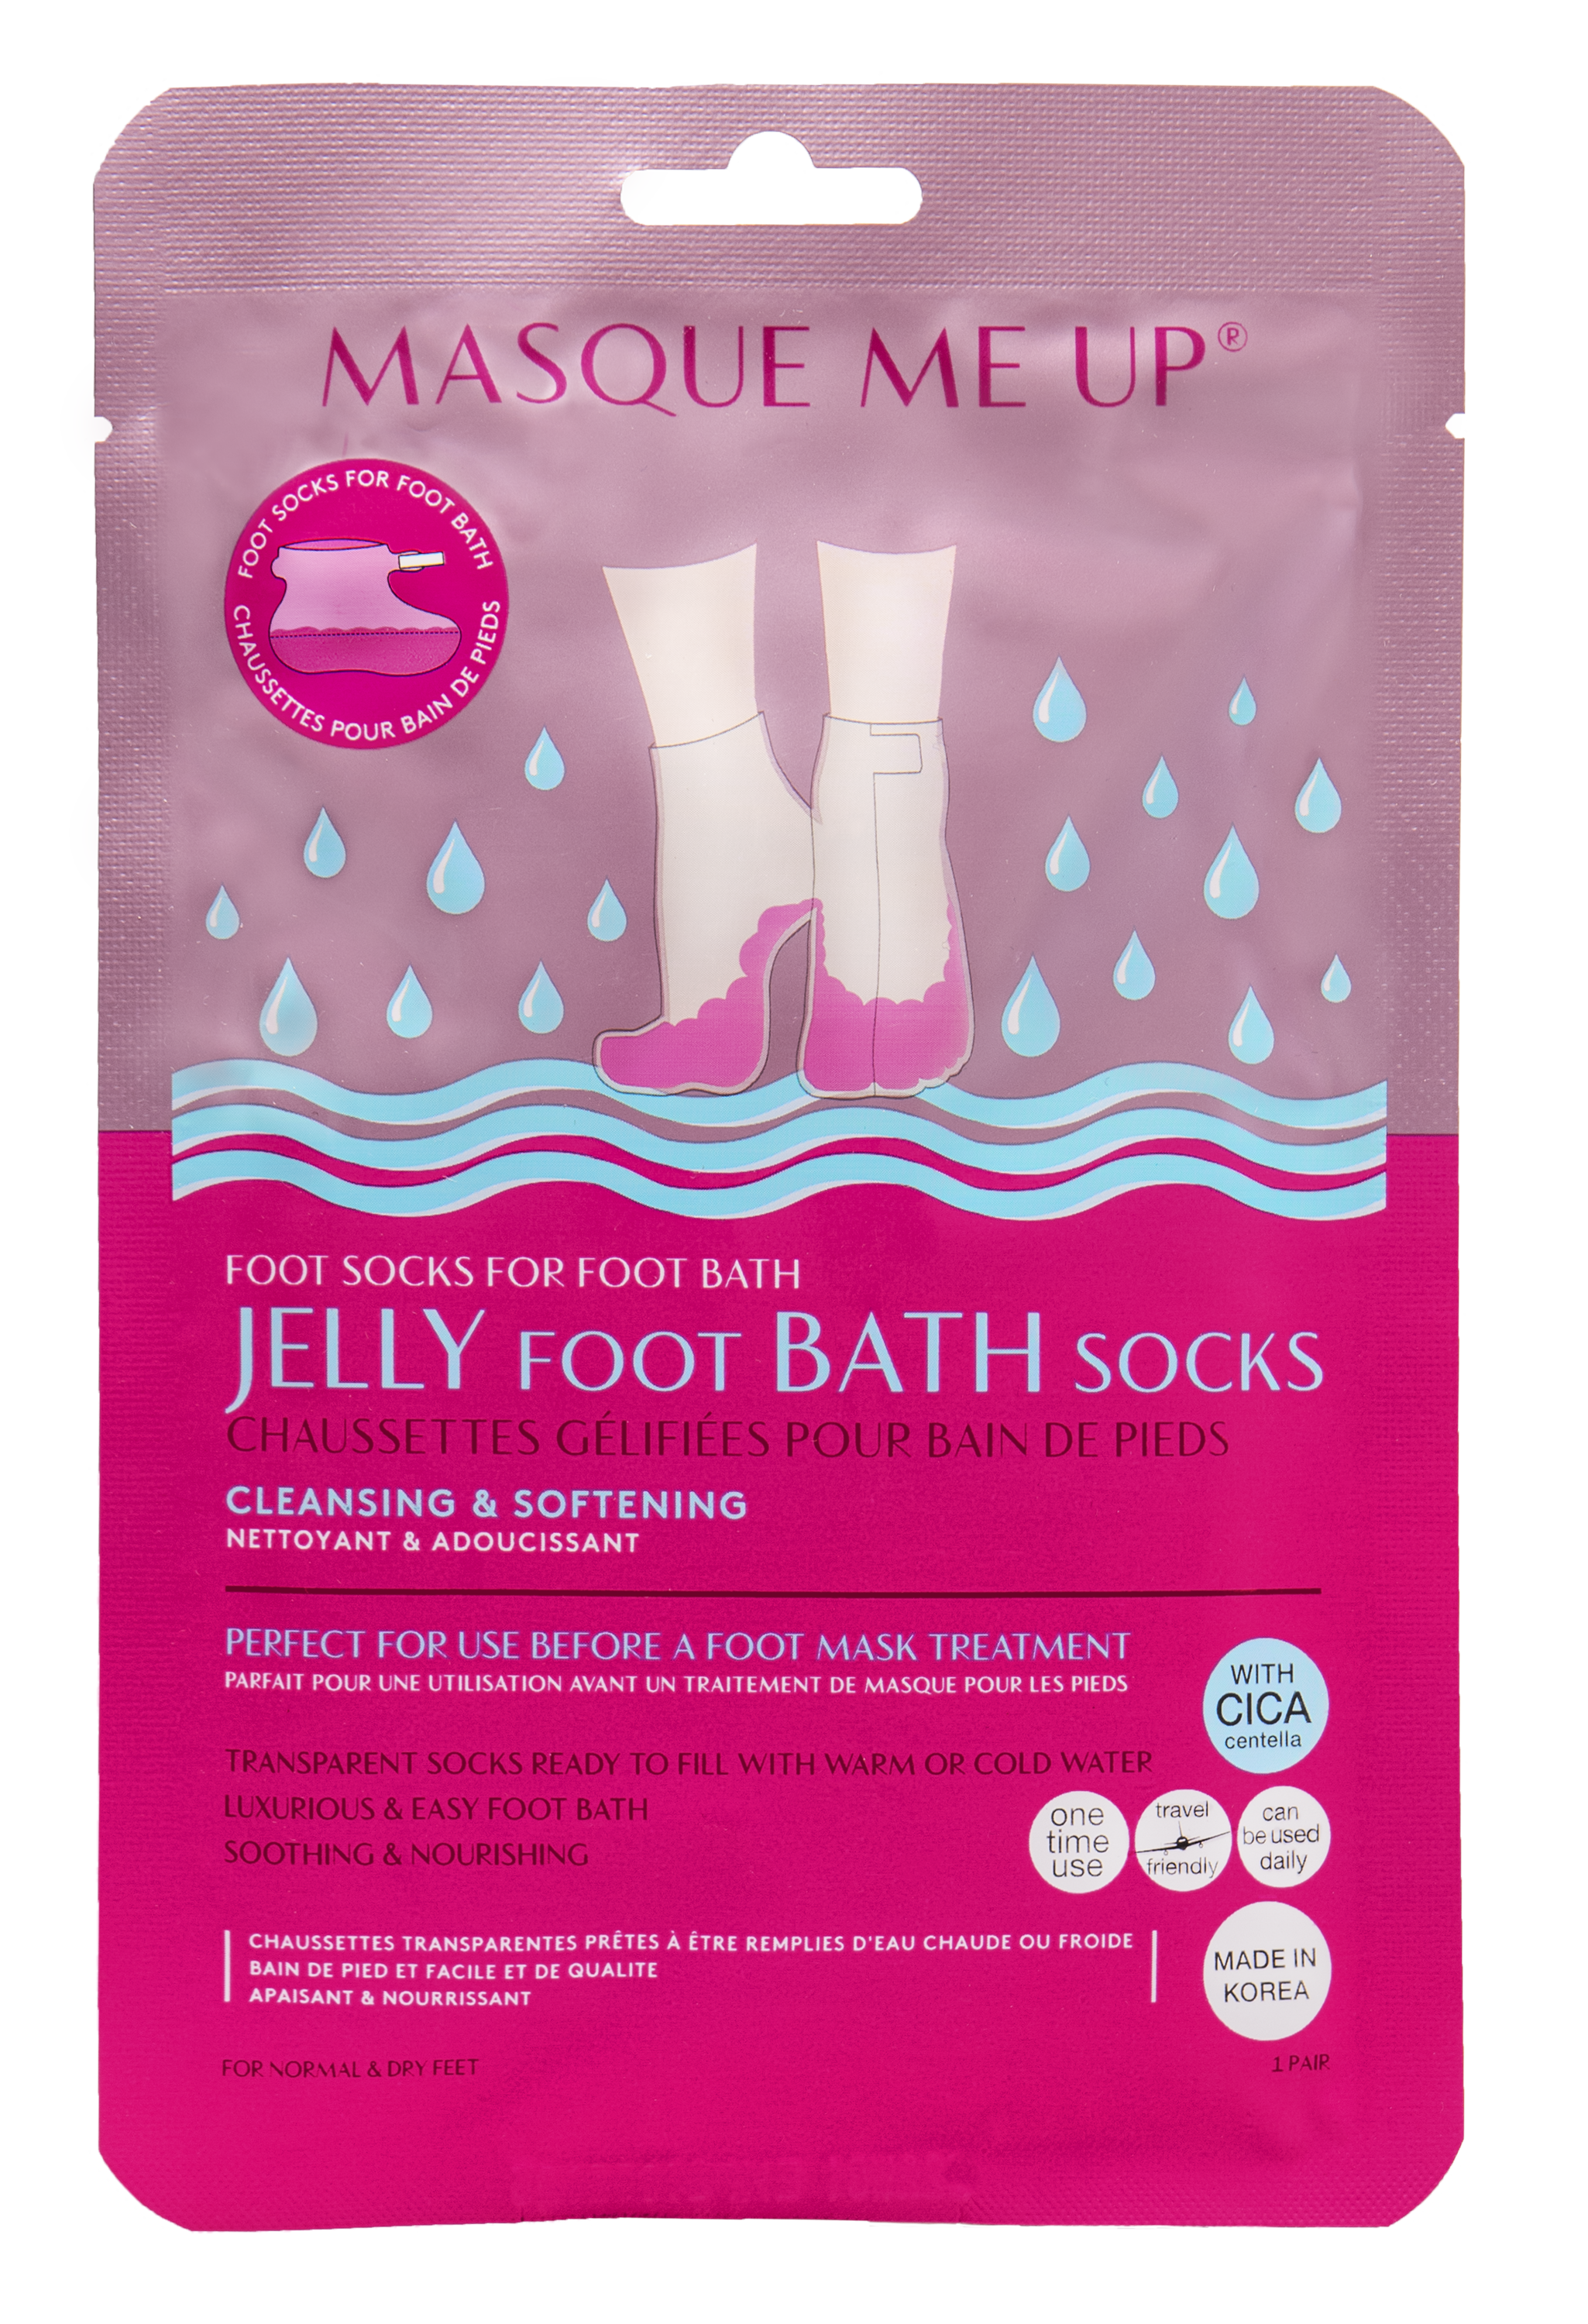 Billede af Jelly Foot Bath Socks hos Miqura